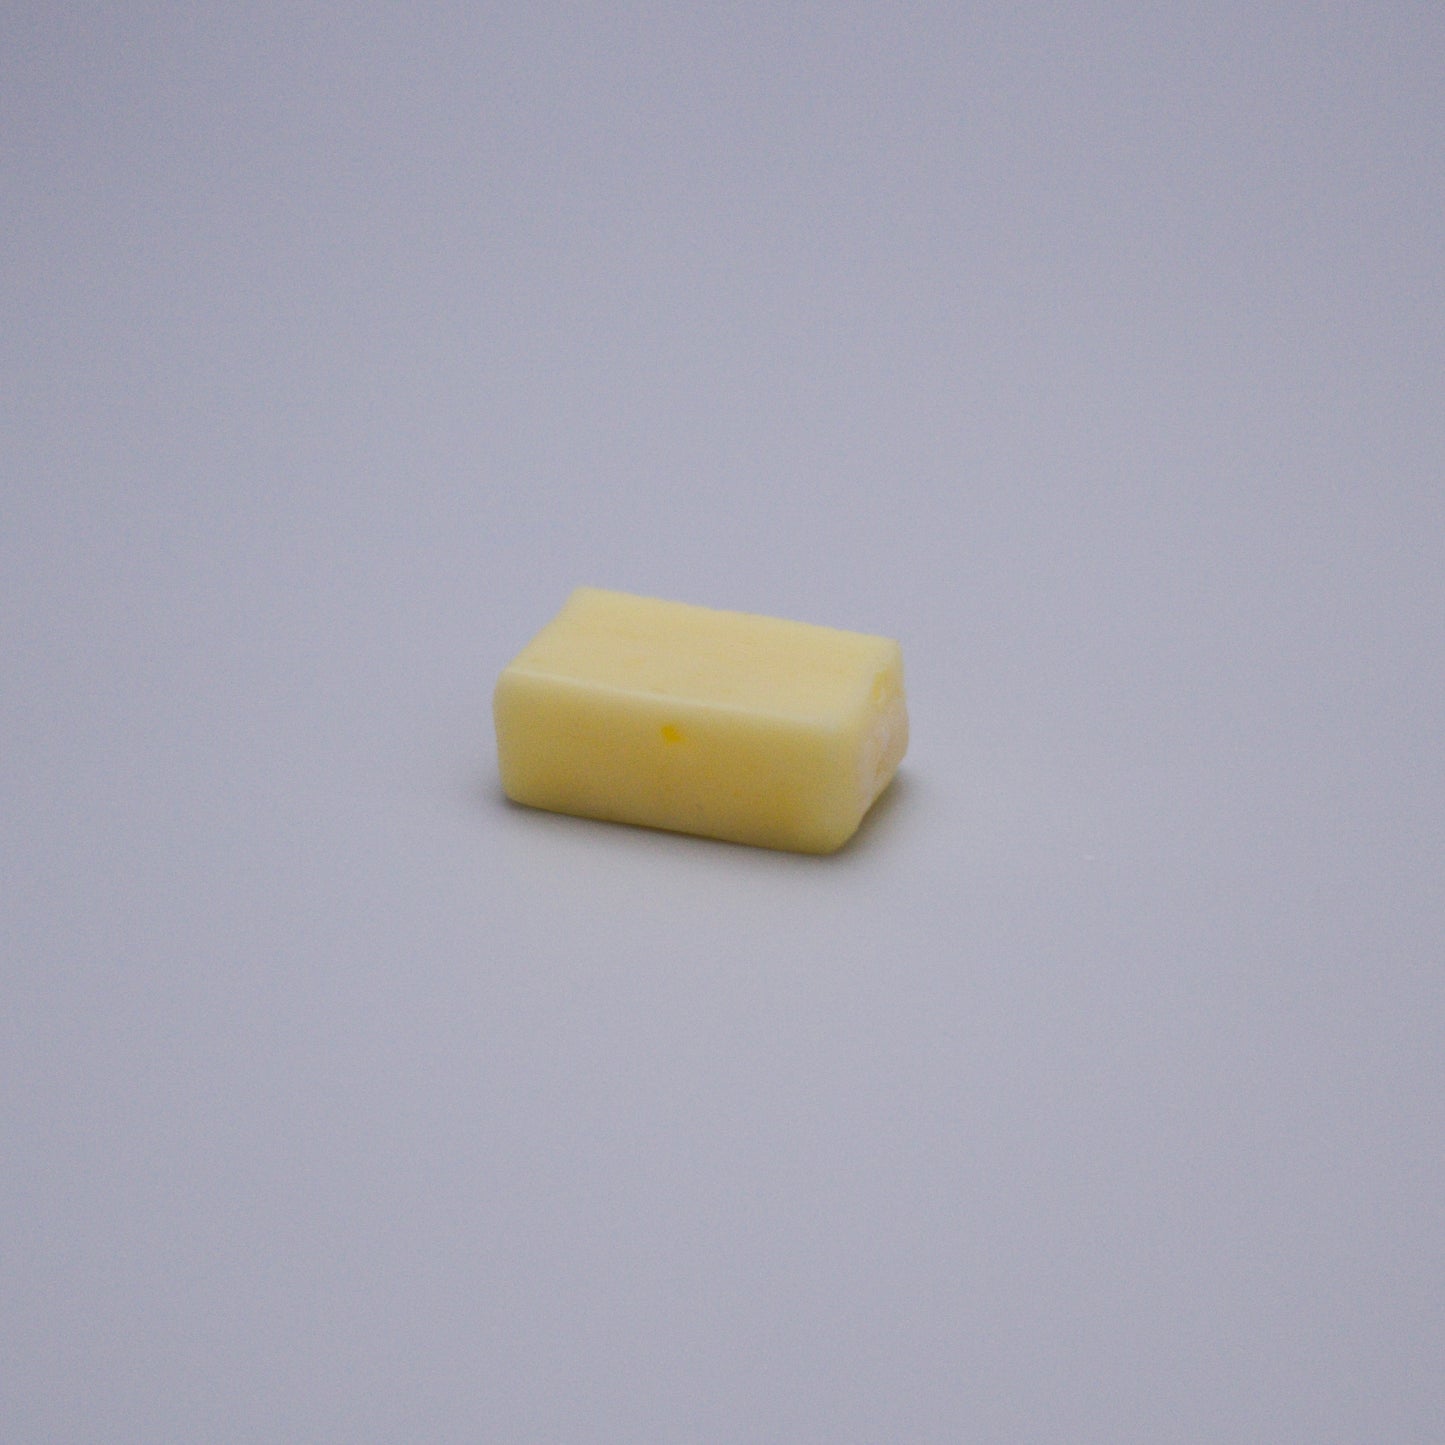 Expired - Morinaga Hi-Chew Soft Candy Sour Lemon Flavour 12 Pcs